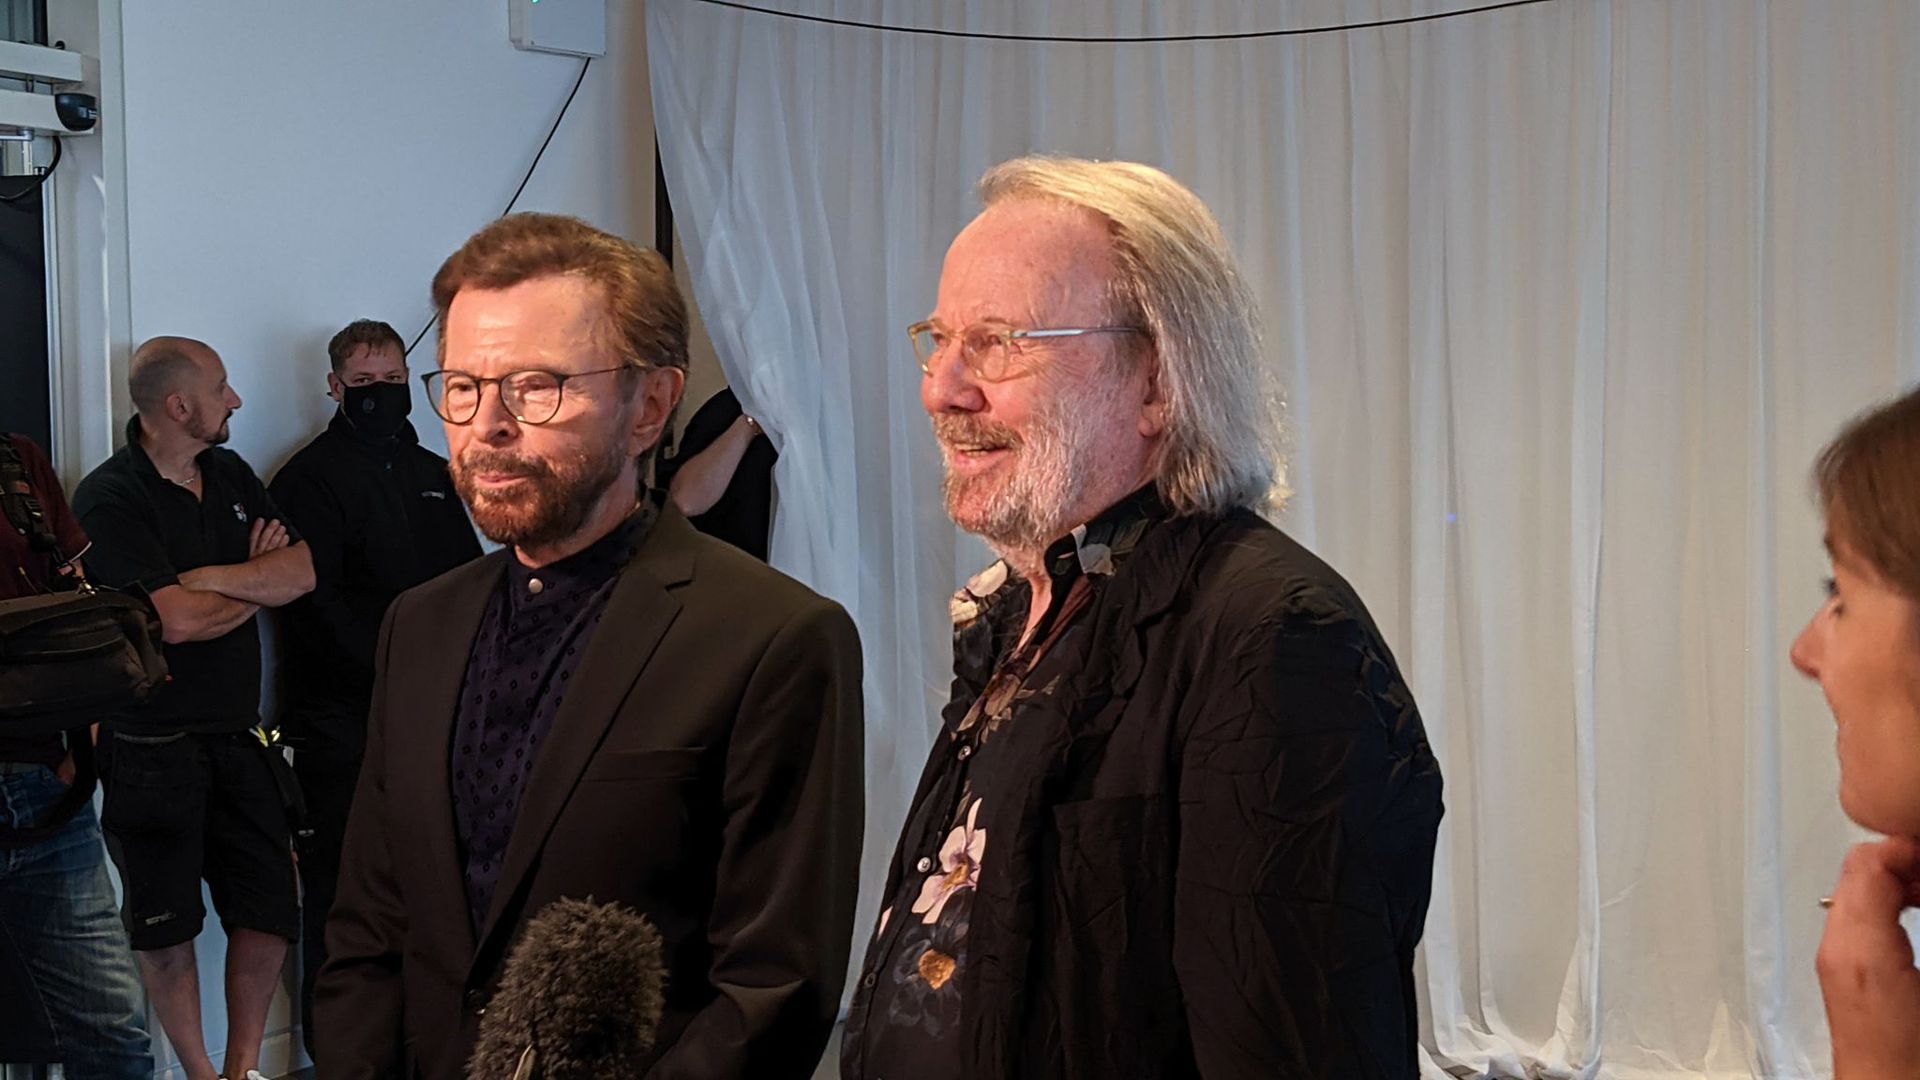 Björn Ulvaeus (l) und Benny Andersson, Mitglieder der schwedischen Popgruppe Abba, stehen bei einem Intview in London.